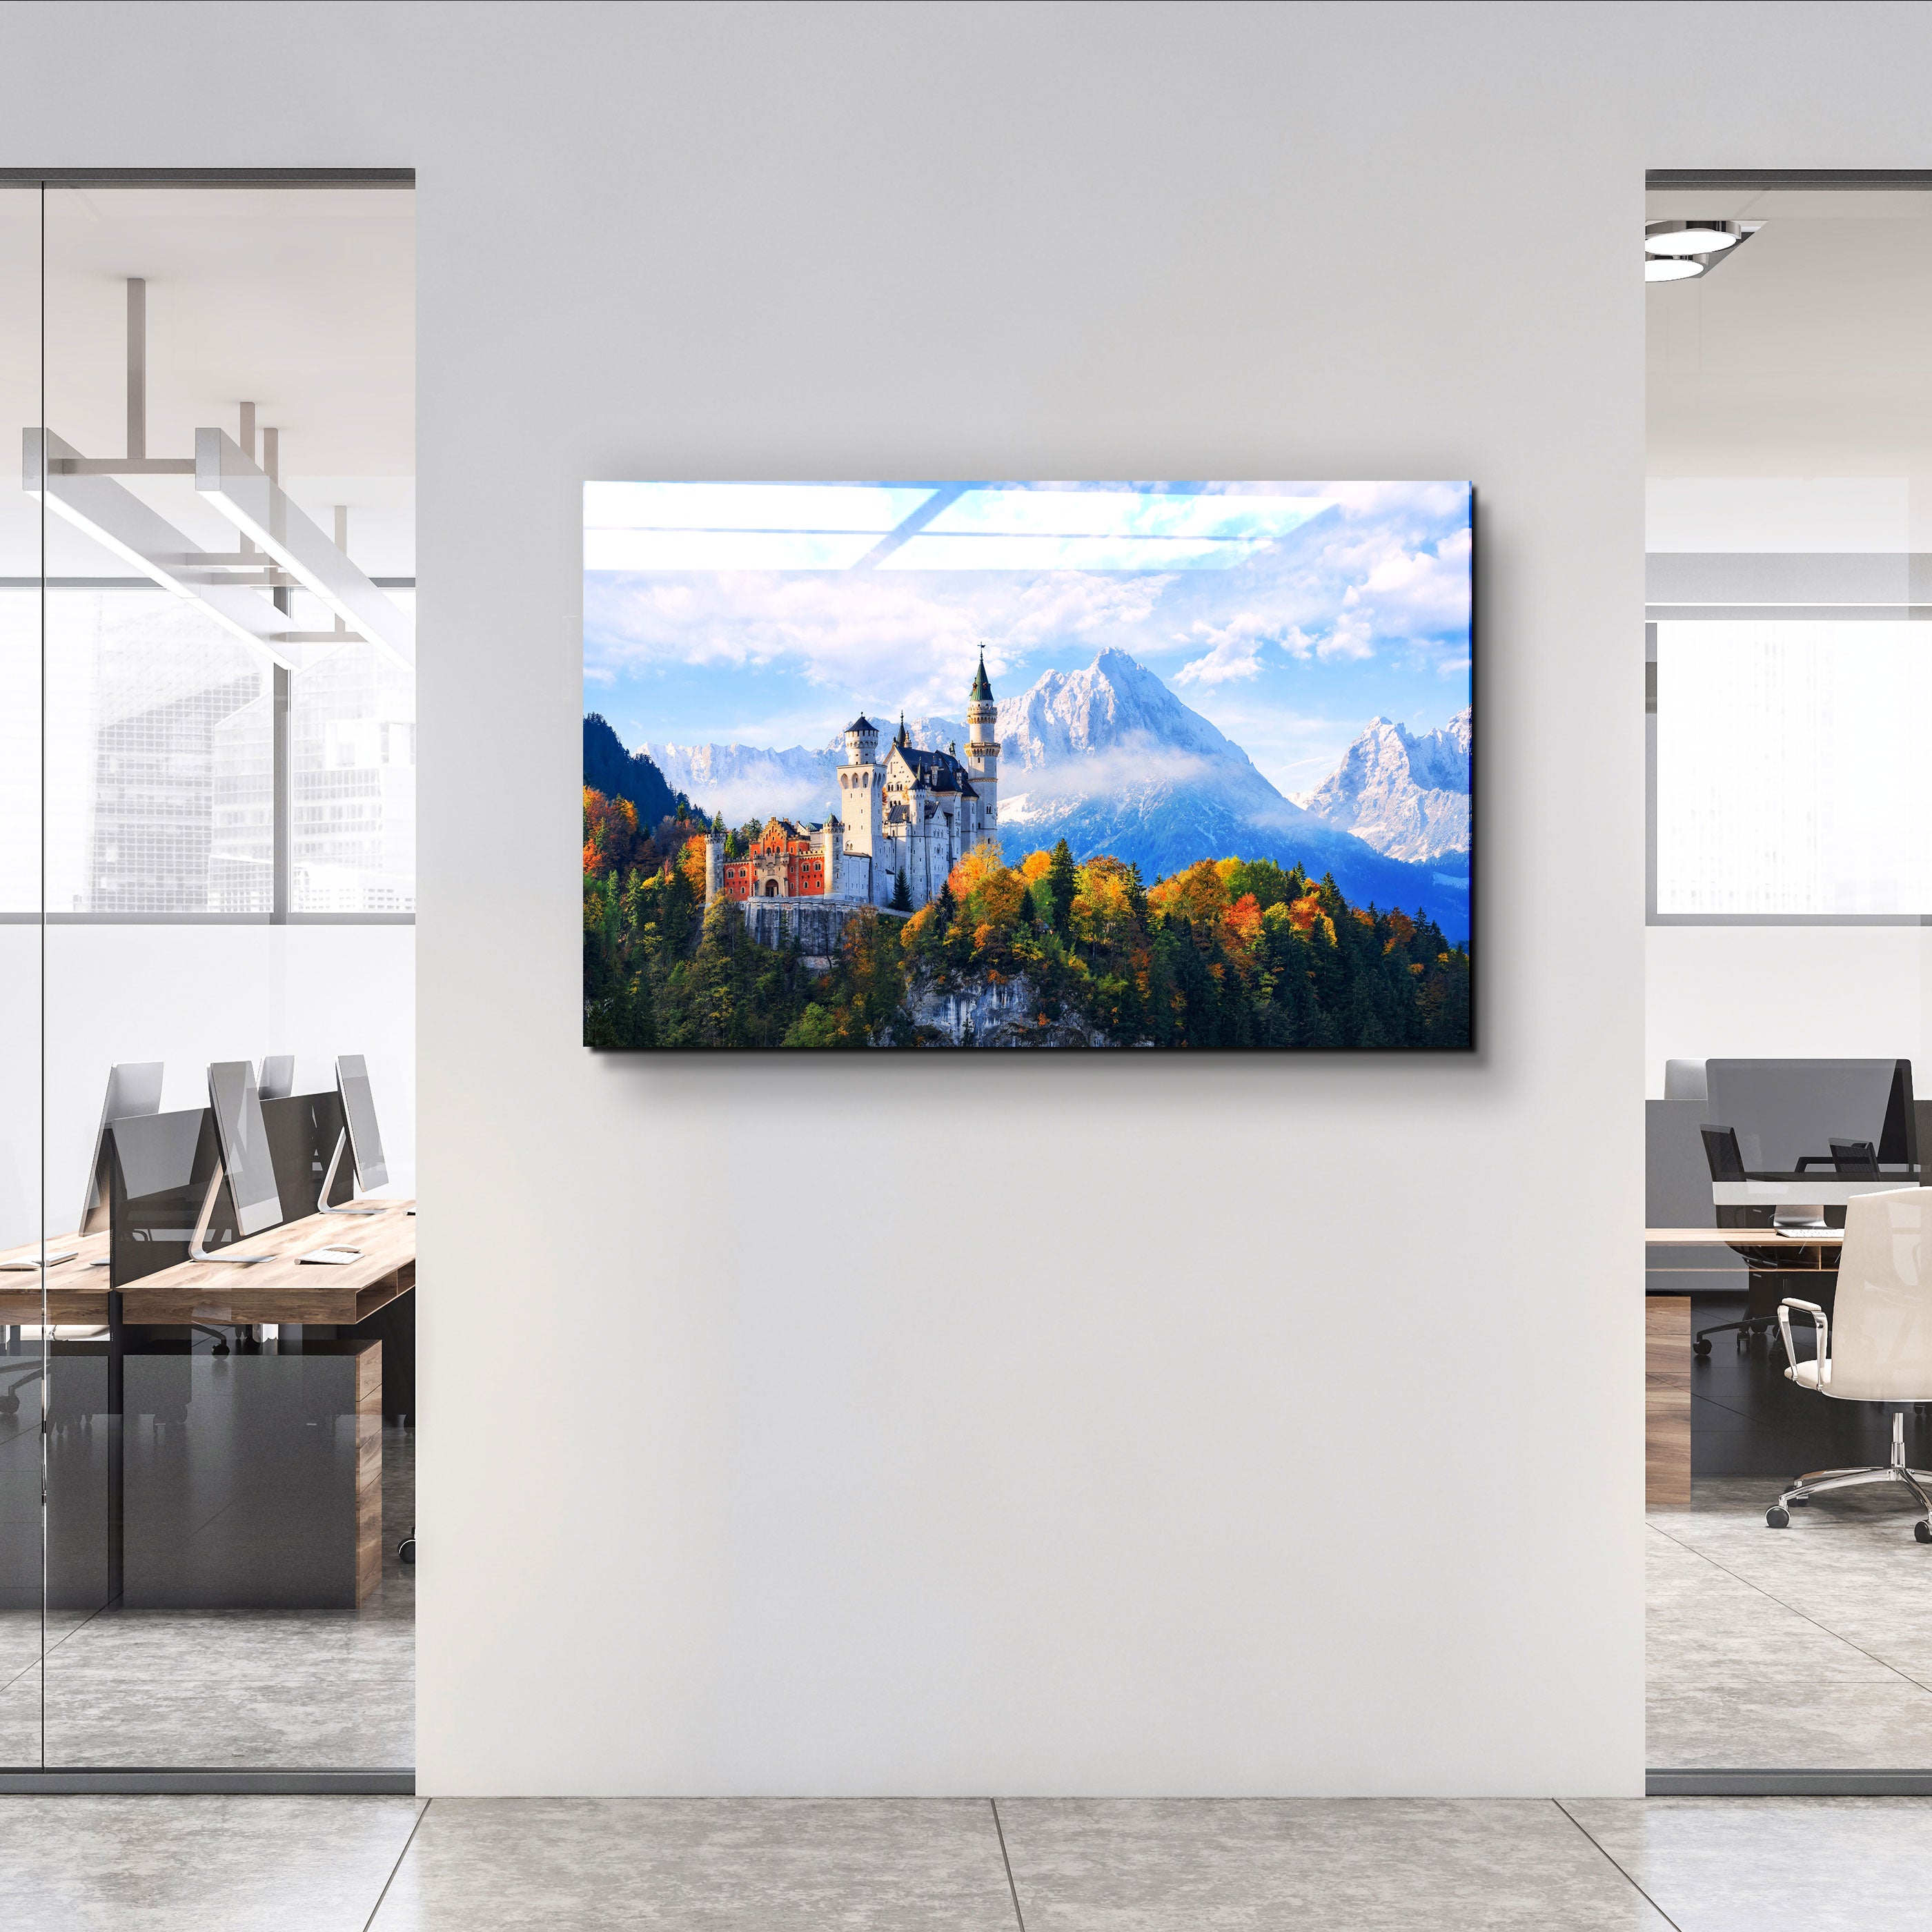 ・"Belle vue sur le château de Neuschwanstein dans les Alpes bavaroises, Allemagne"・Décoration murale en verre